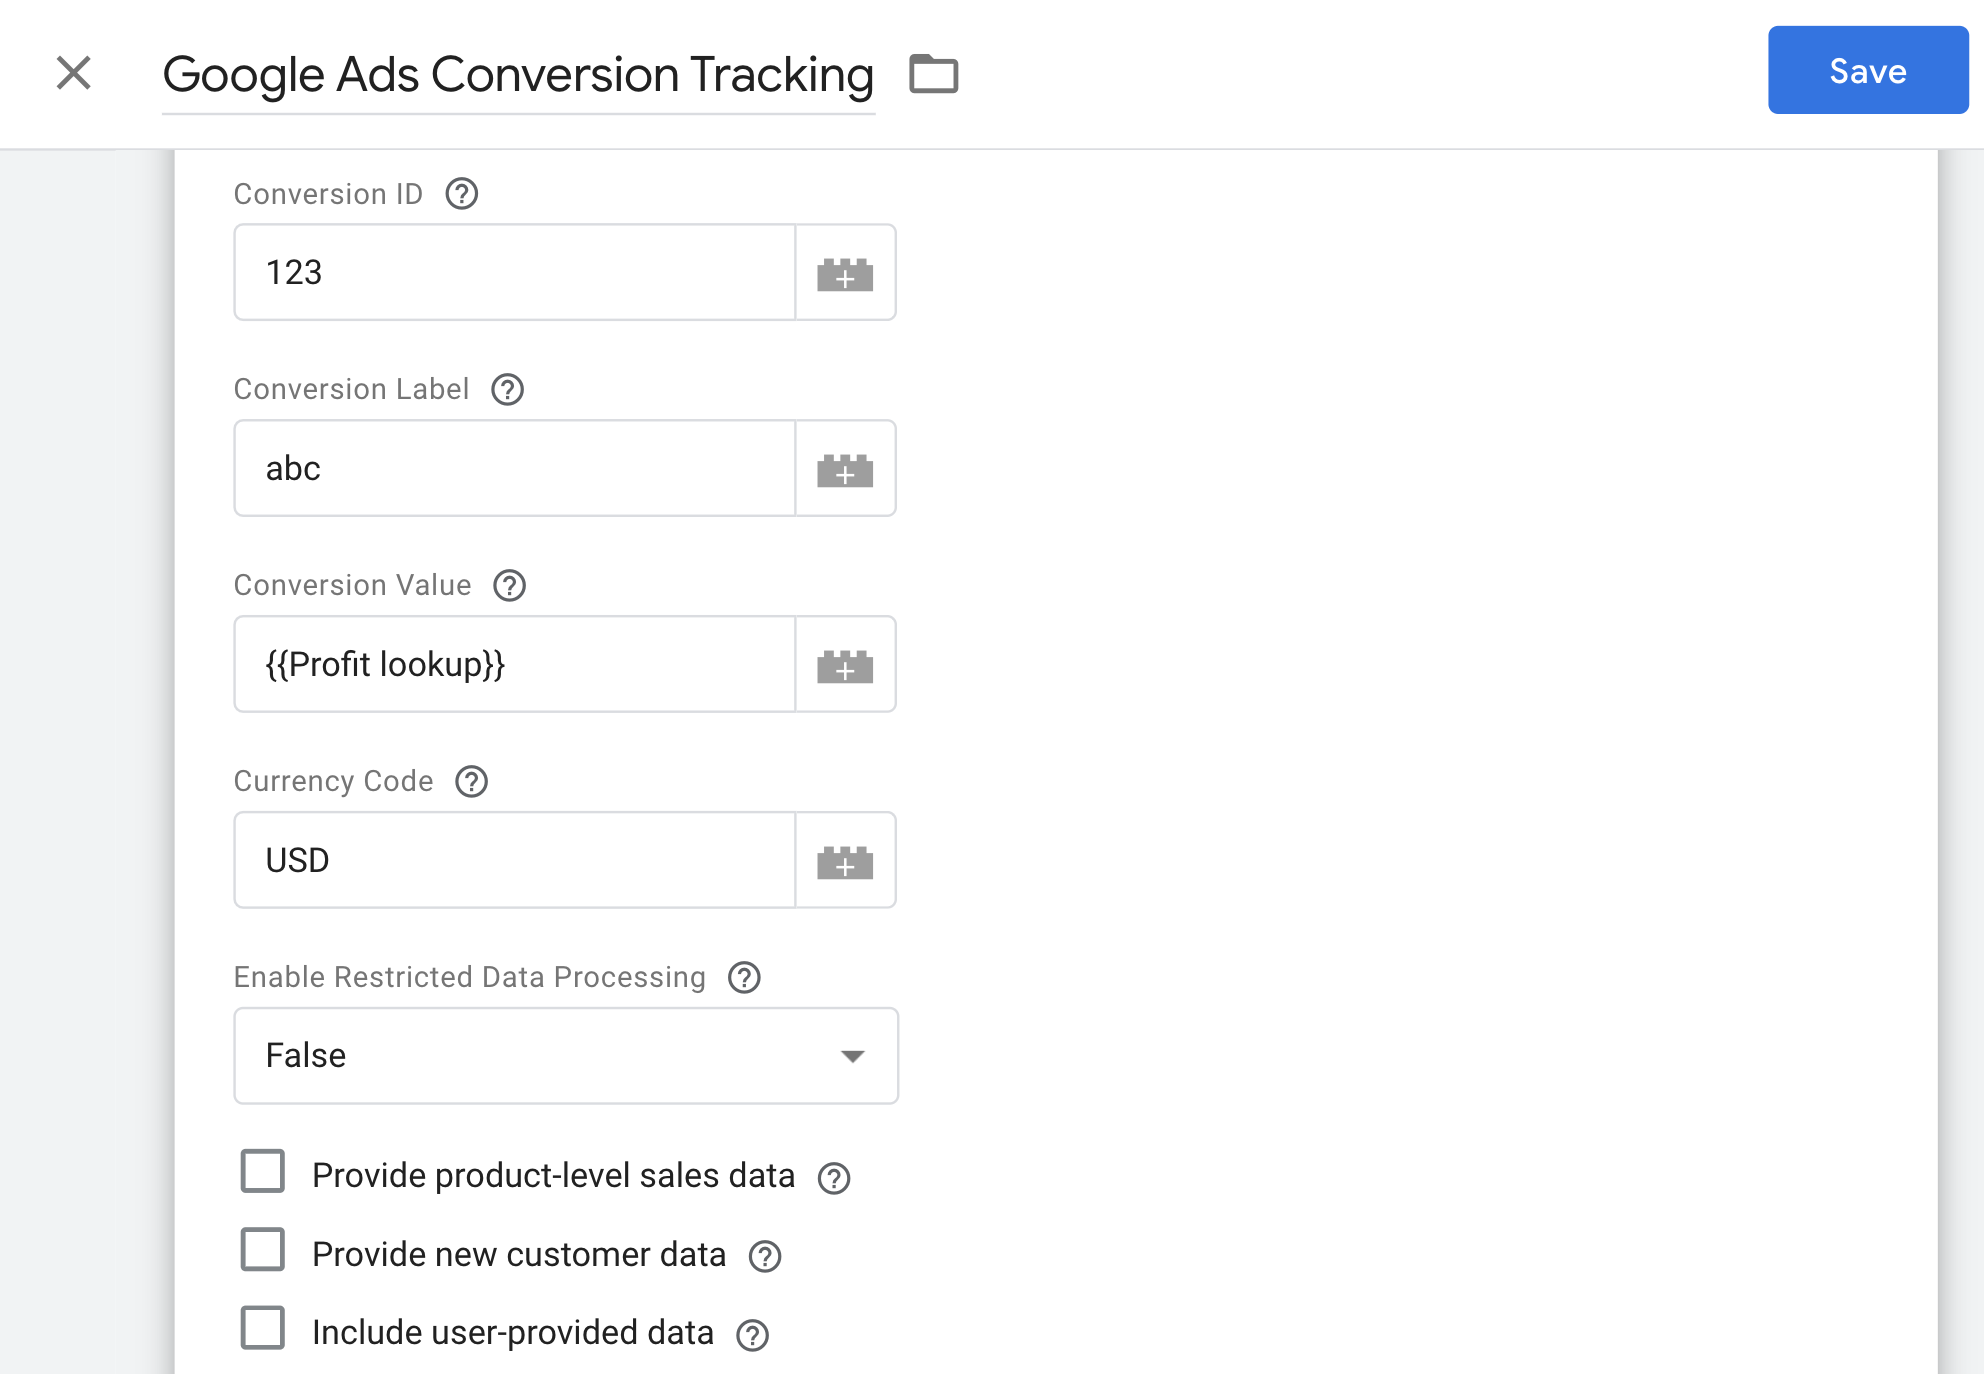 เครื่องมือวัด Conversion ของ Google Ads ที่ใช้มูลค่า Conversion